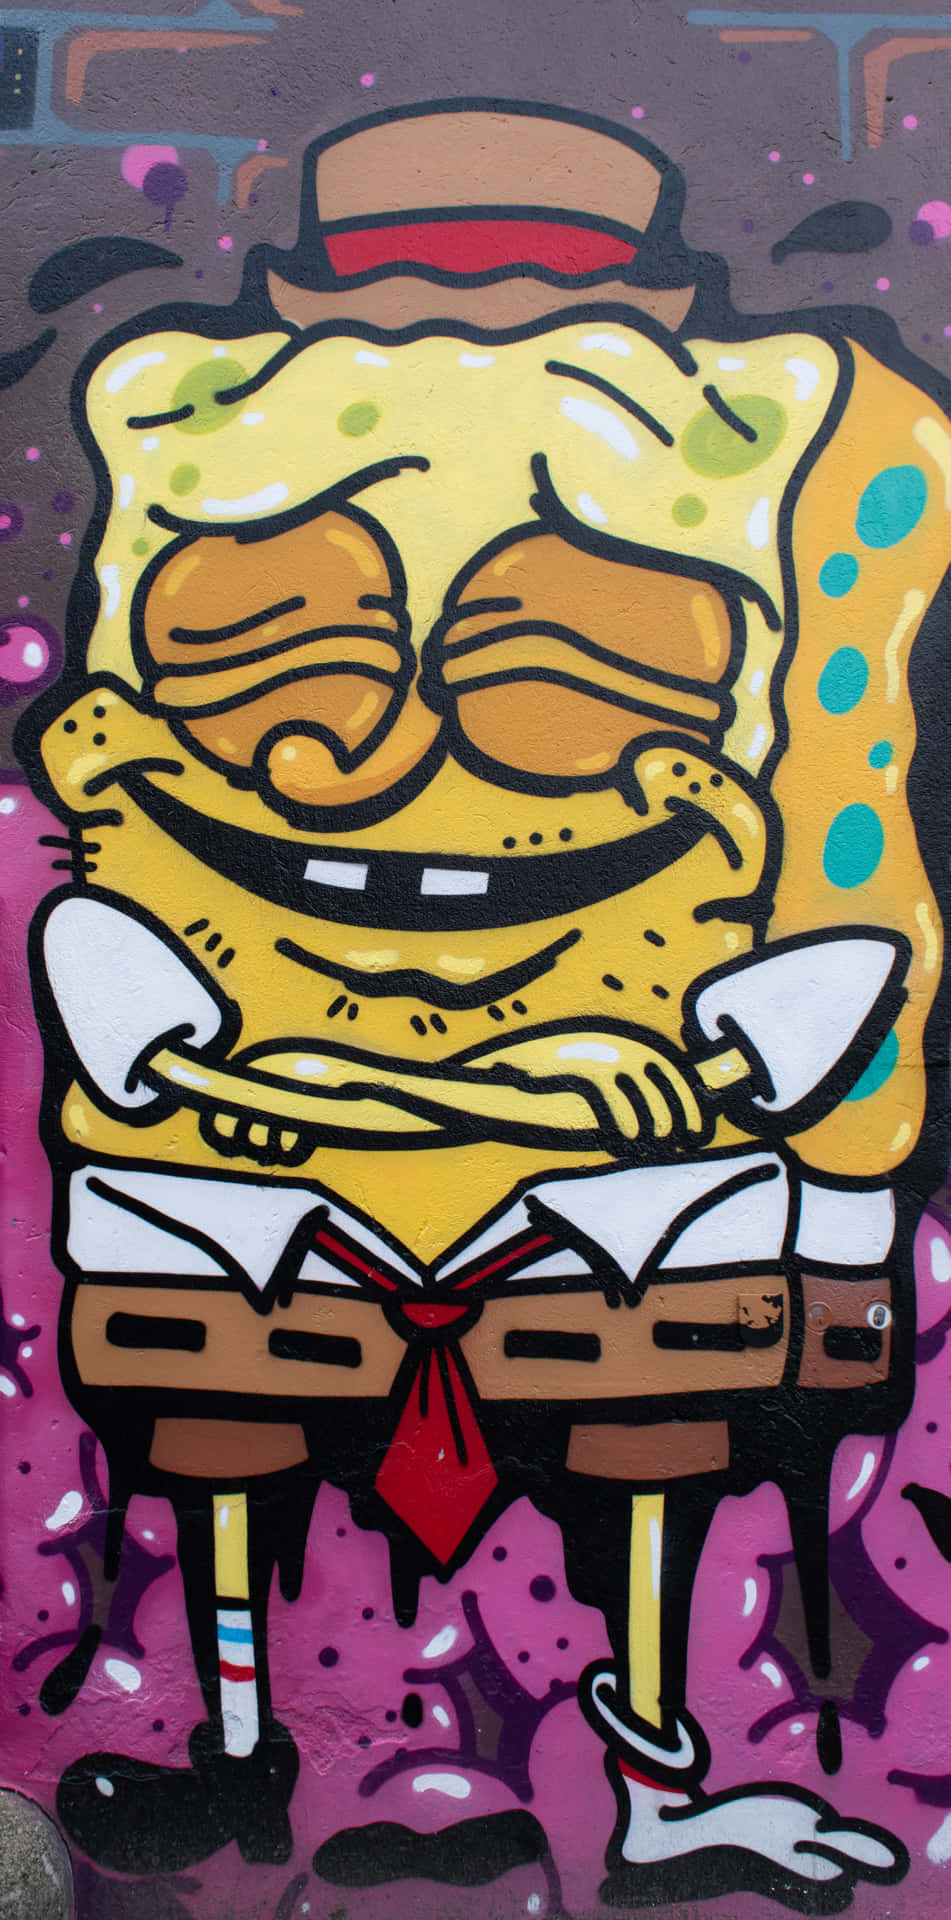 Spongebobsquarepants Fan Art-bild Som Dator- Eller Mobilbakgrund.